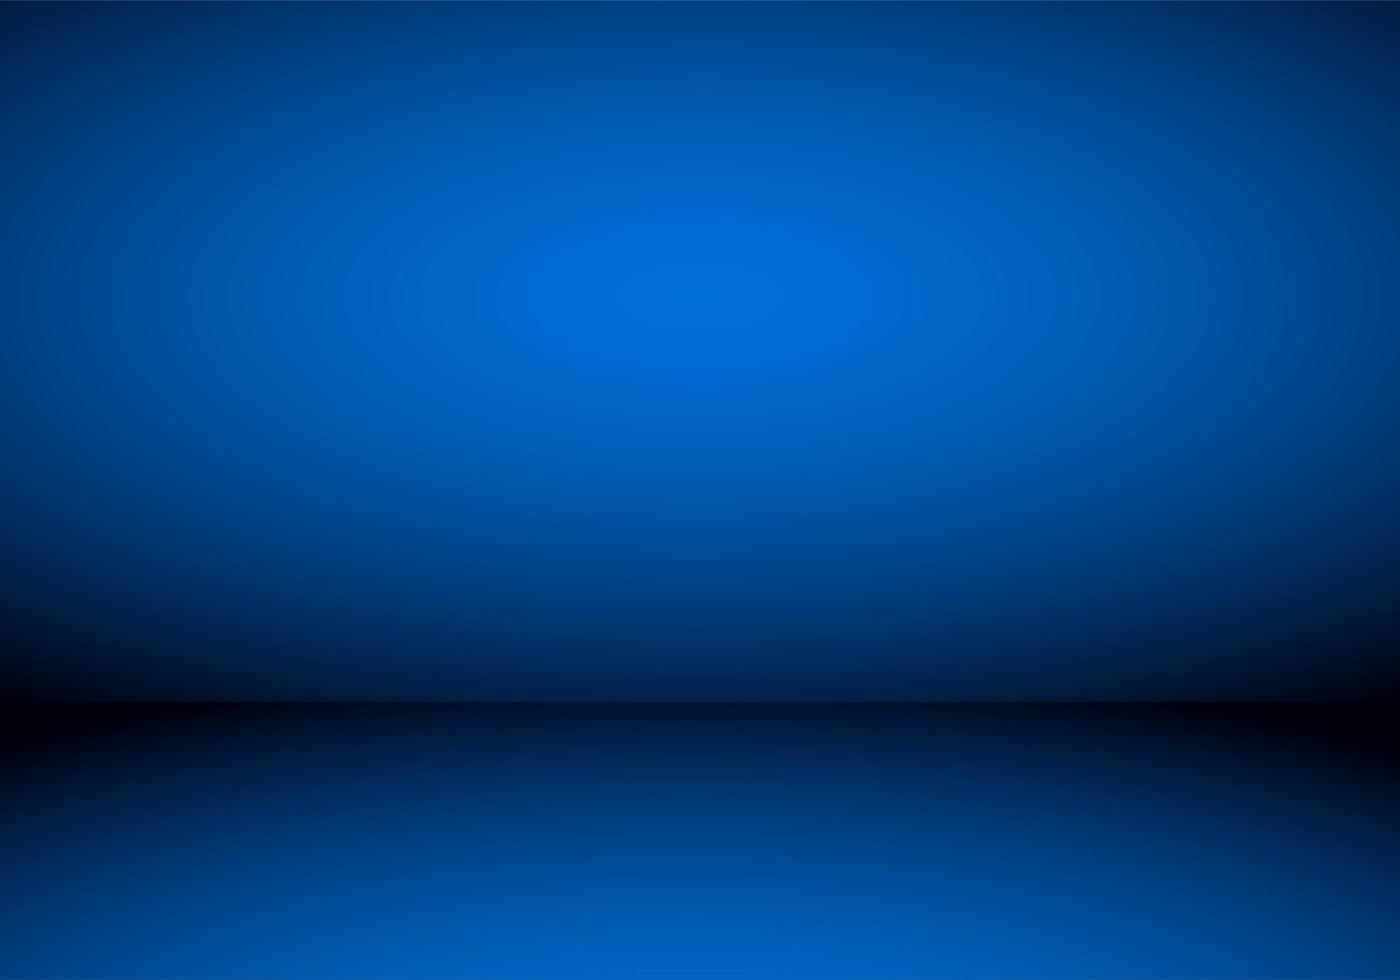 blauwe lege kamer studio achtergrond vector